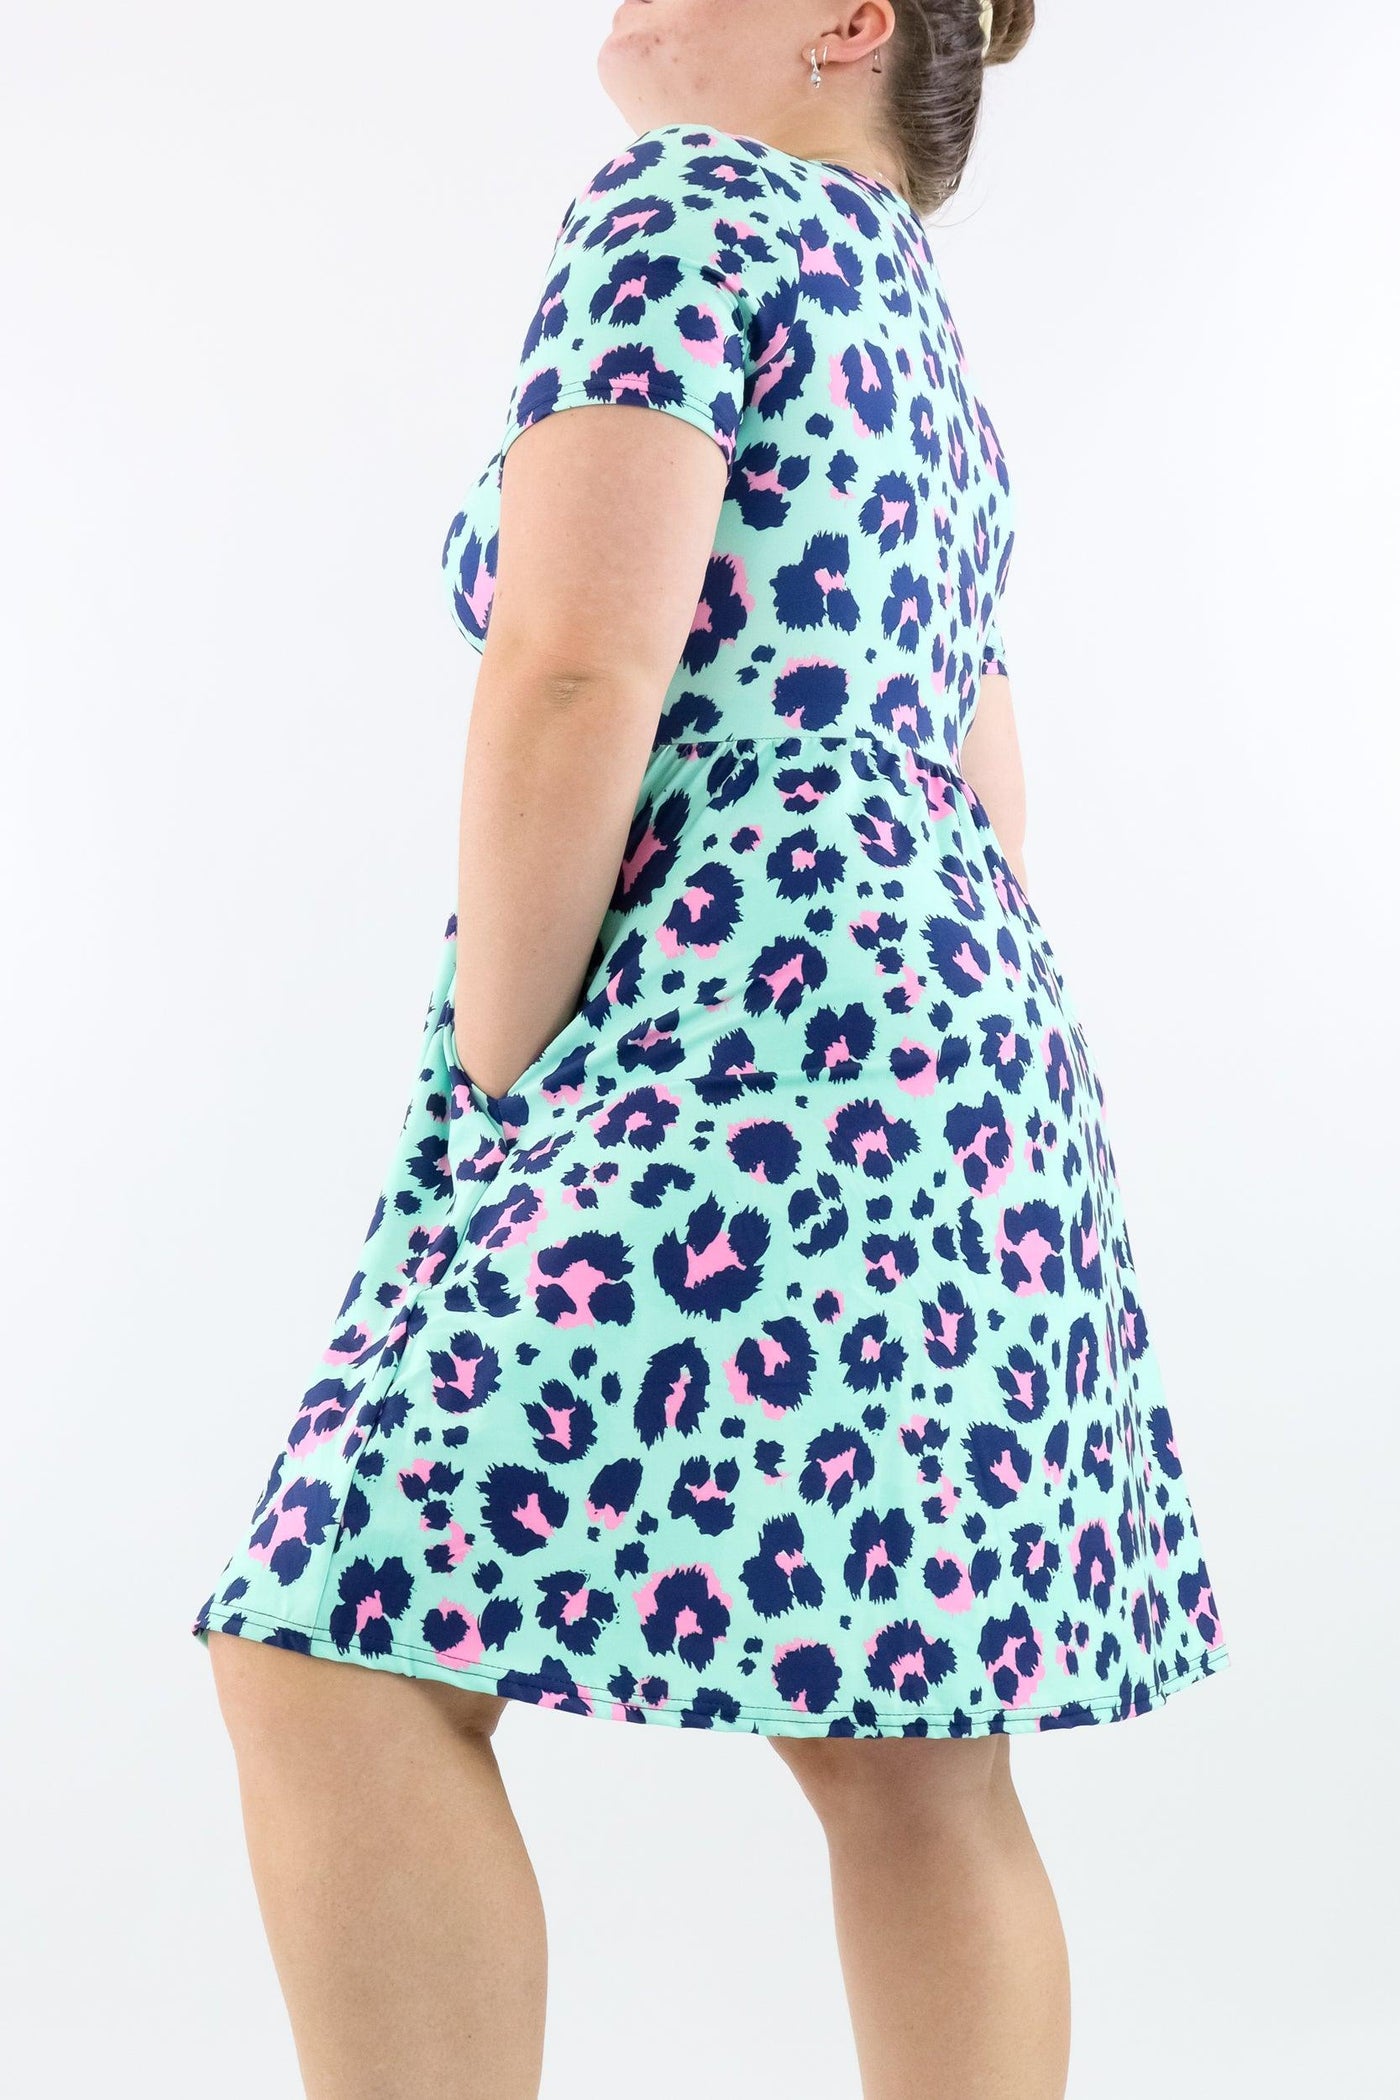 Minty Leopard - Short Sleeve Skater Dress - Knee Length - Side Pockets